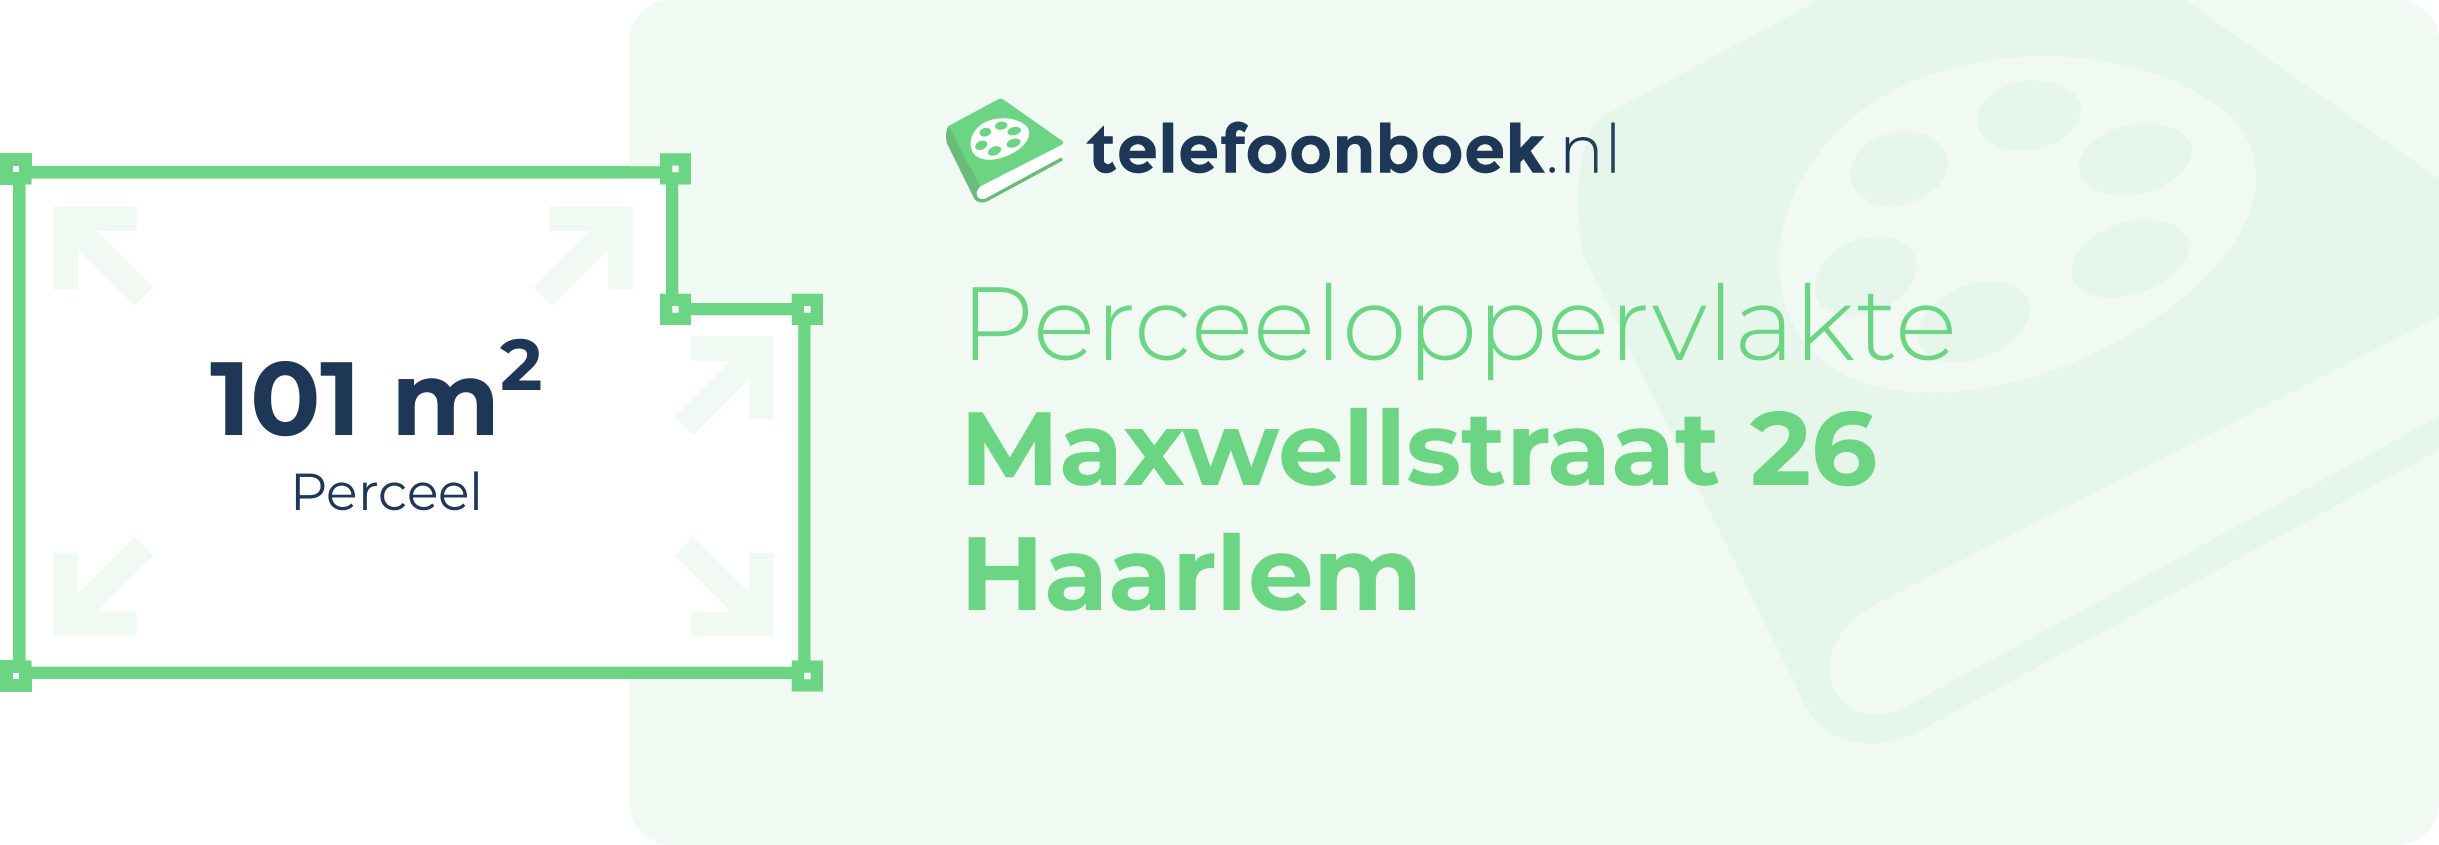 Perceeloppervlakte Maxwellstraat 26 Haarlem